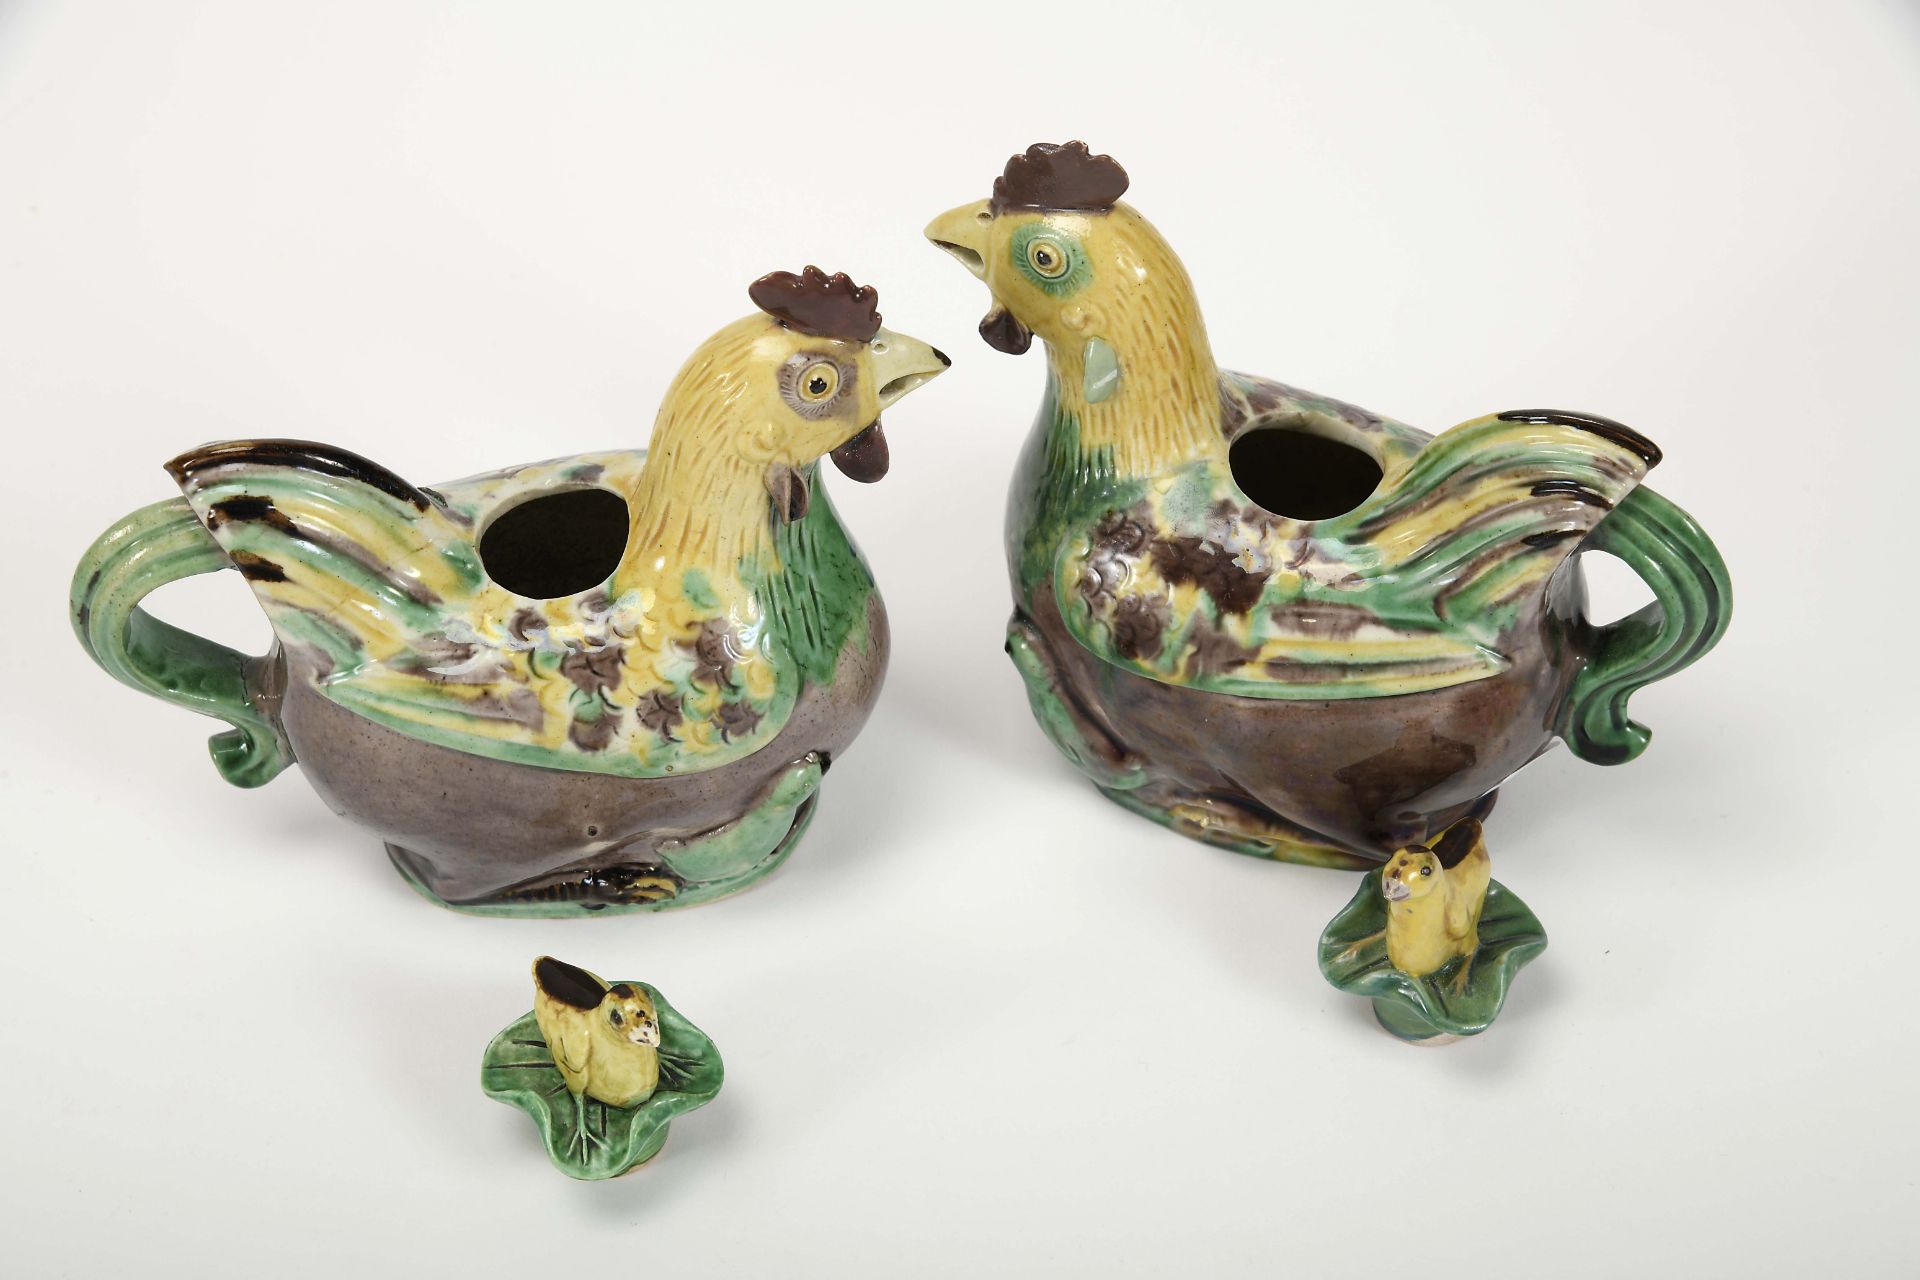 A pair of "Chicken" teapots - Bild 3 aus 3